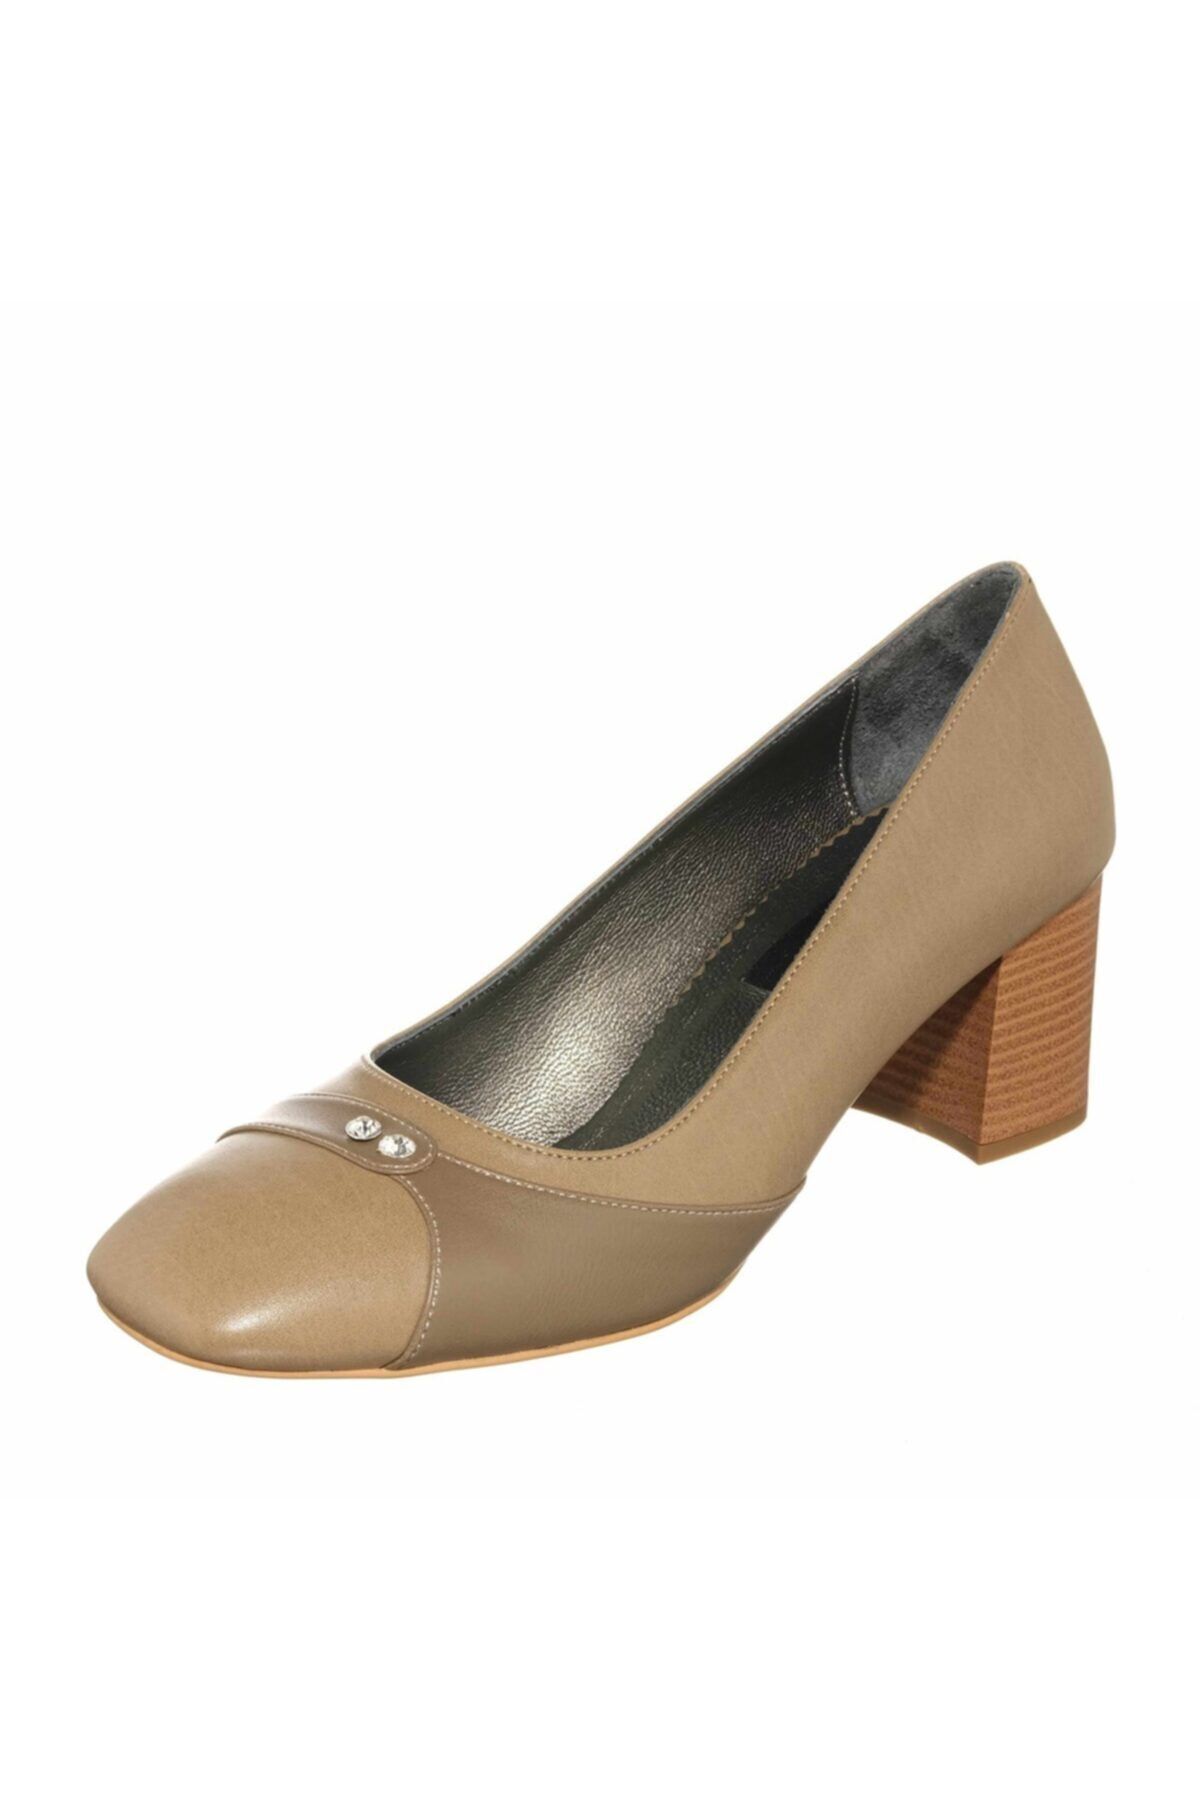 İriadam Kadın Kahverengi Vizon Klasik Topuklu Büyük Numara Ayakkabı